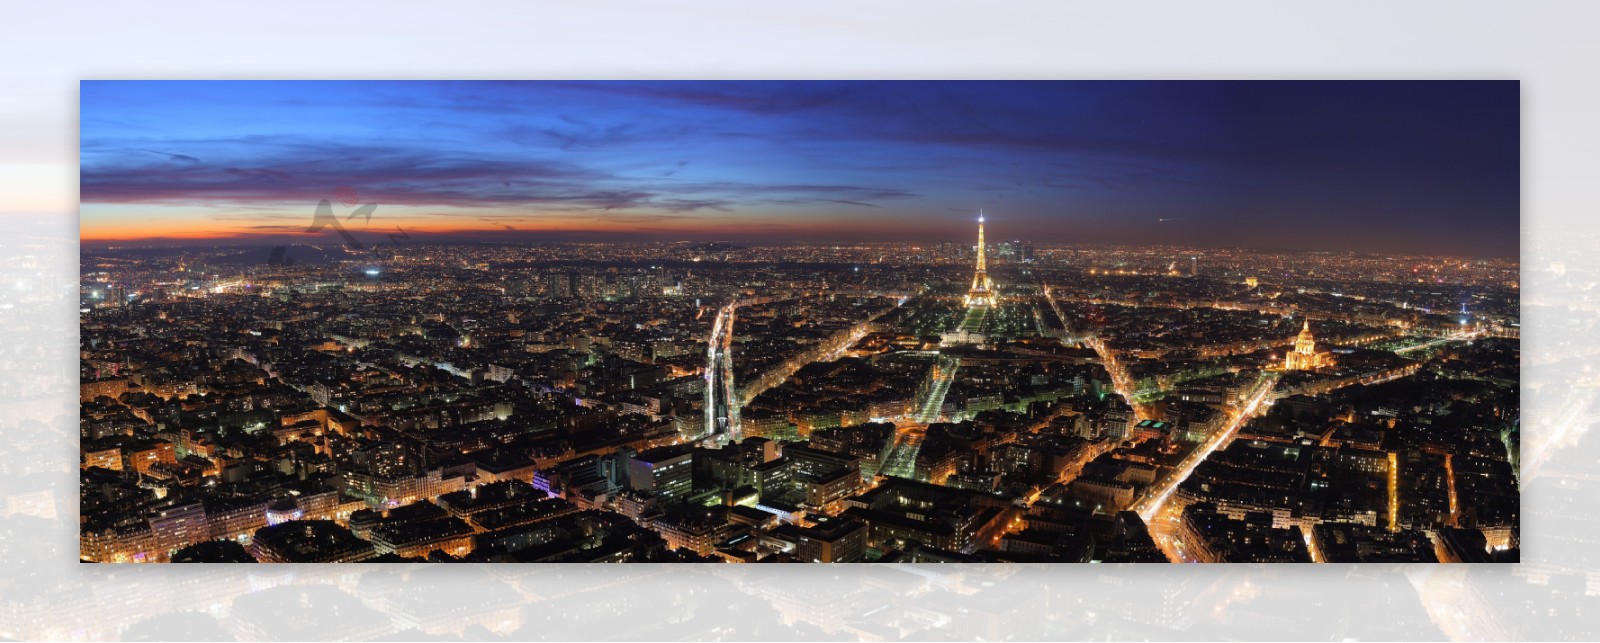 城市风光之巴黎夜景图片